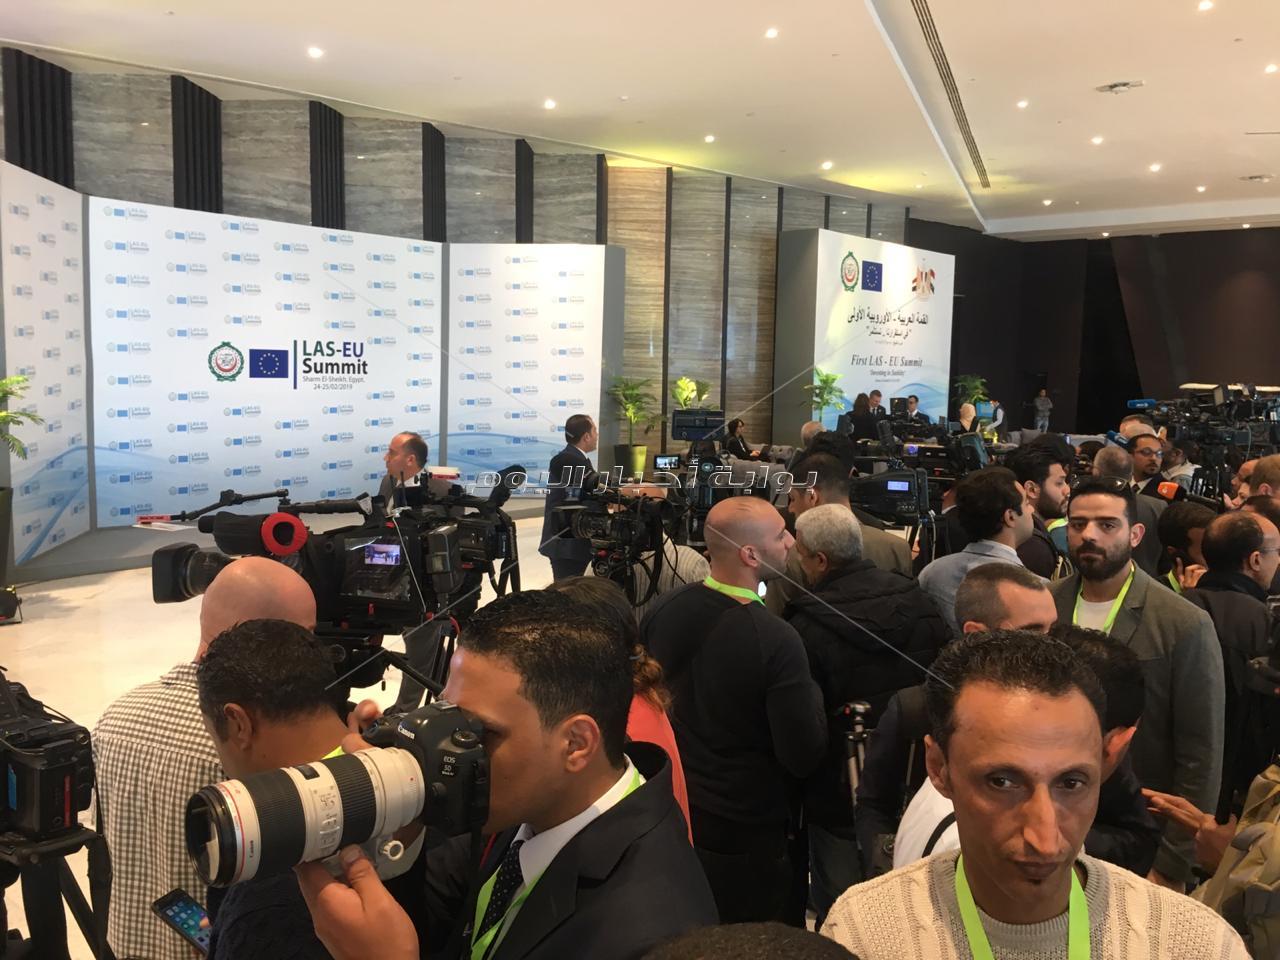 القمة العربية الأوروبية| وسائل الإعلام في انتظار وصول الرؤساء والقادة